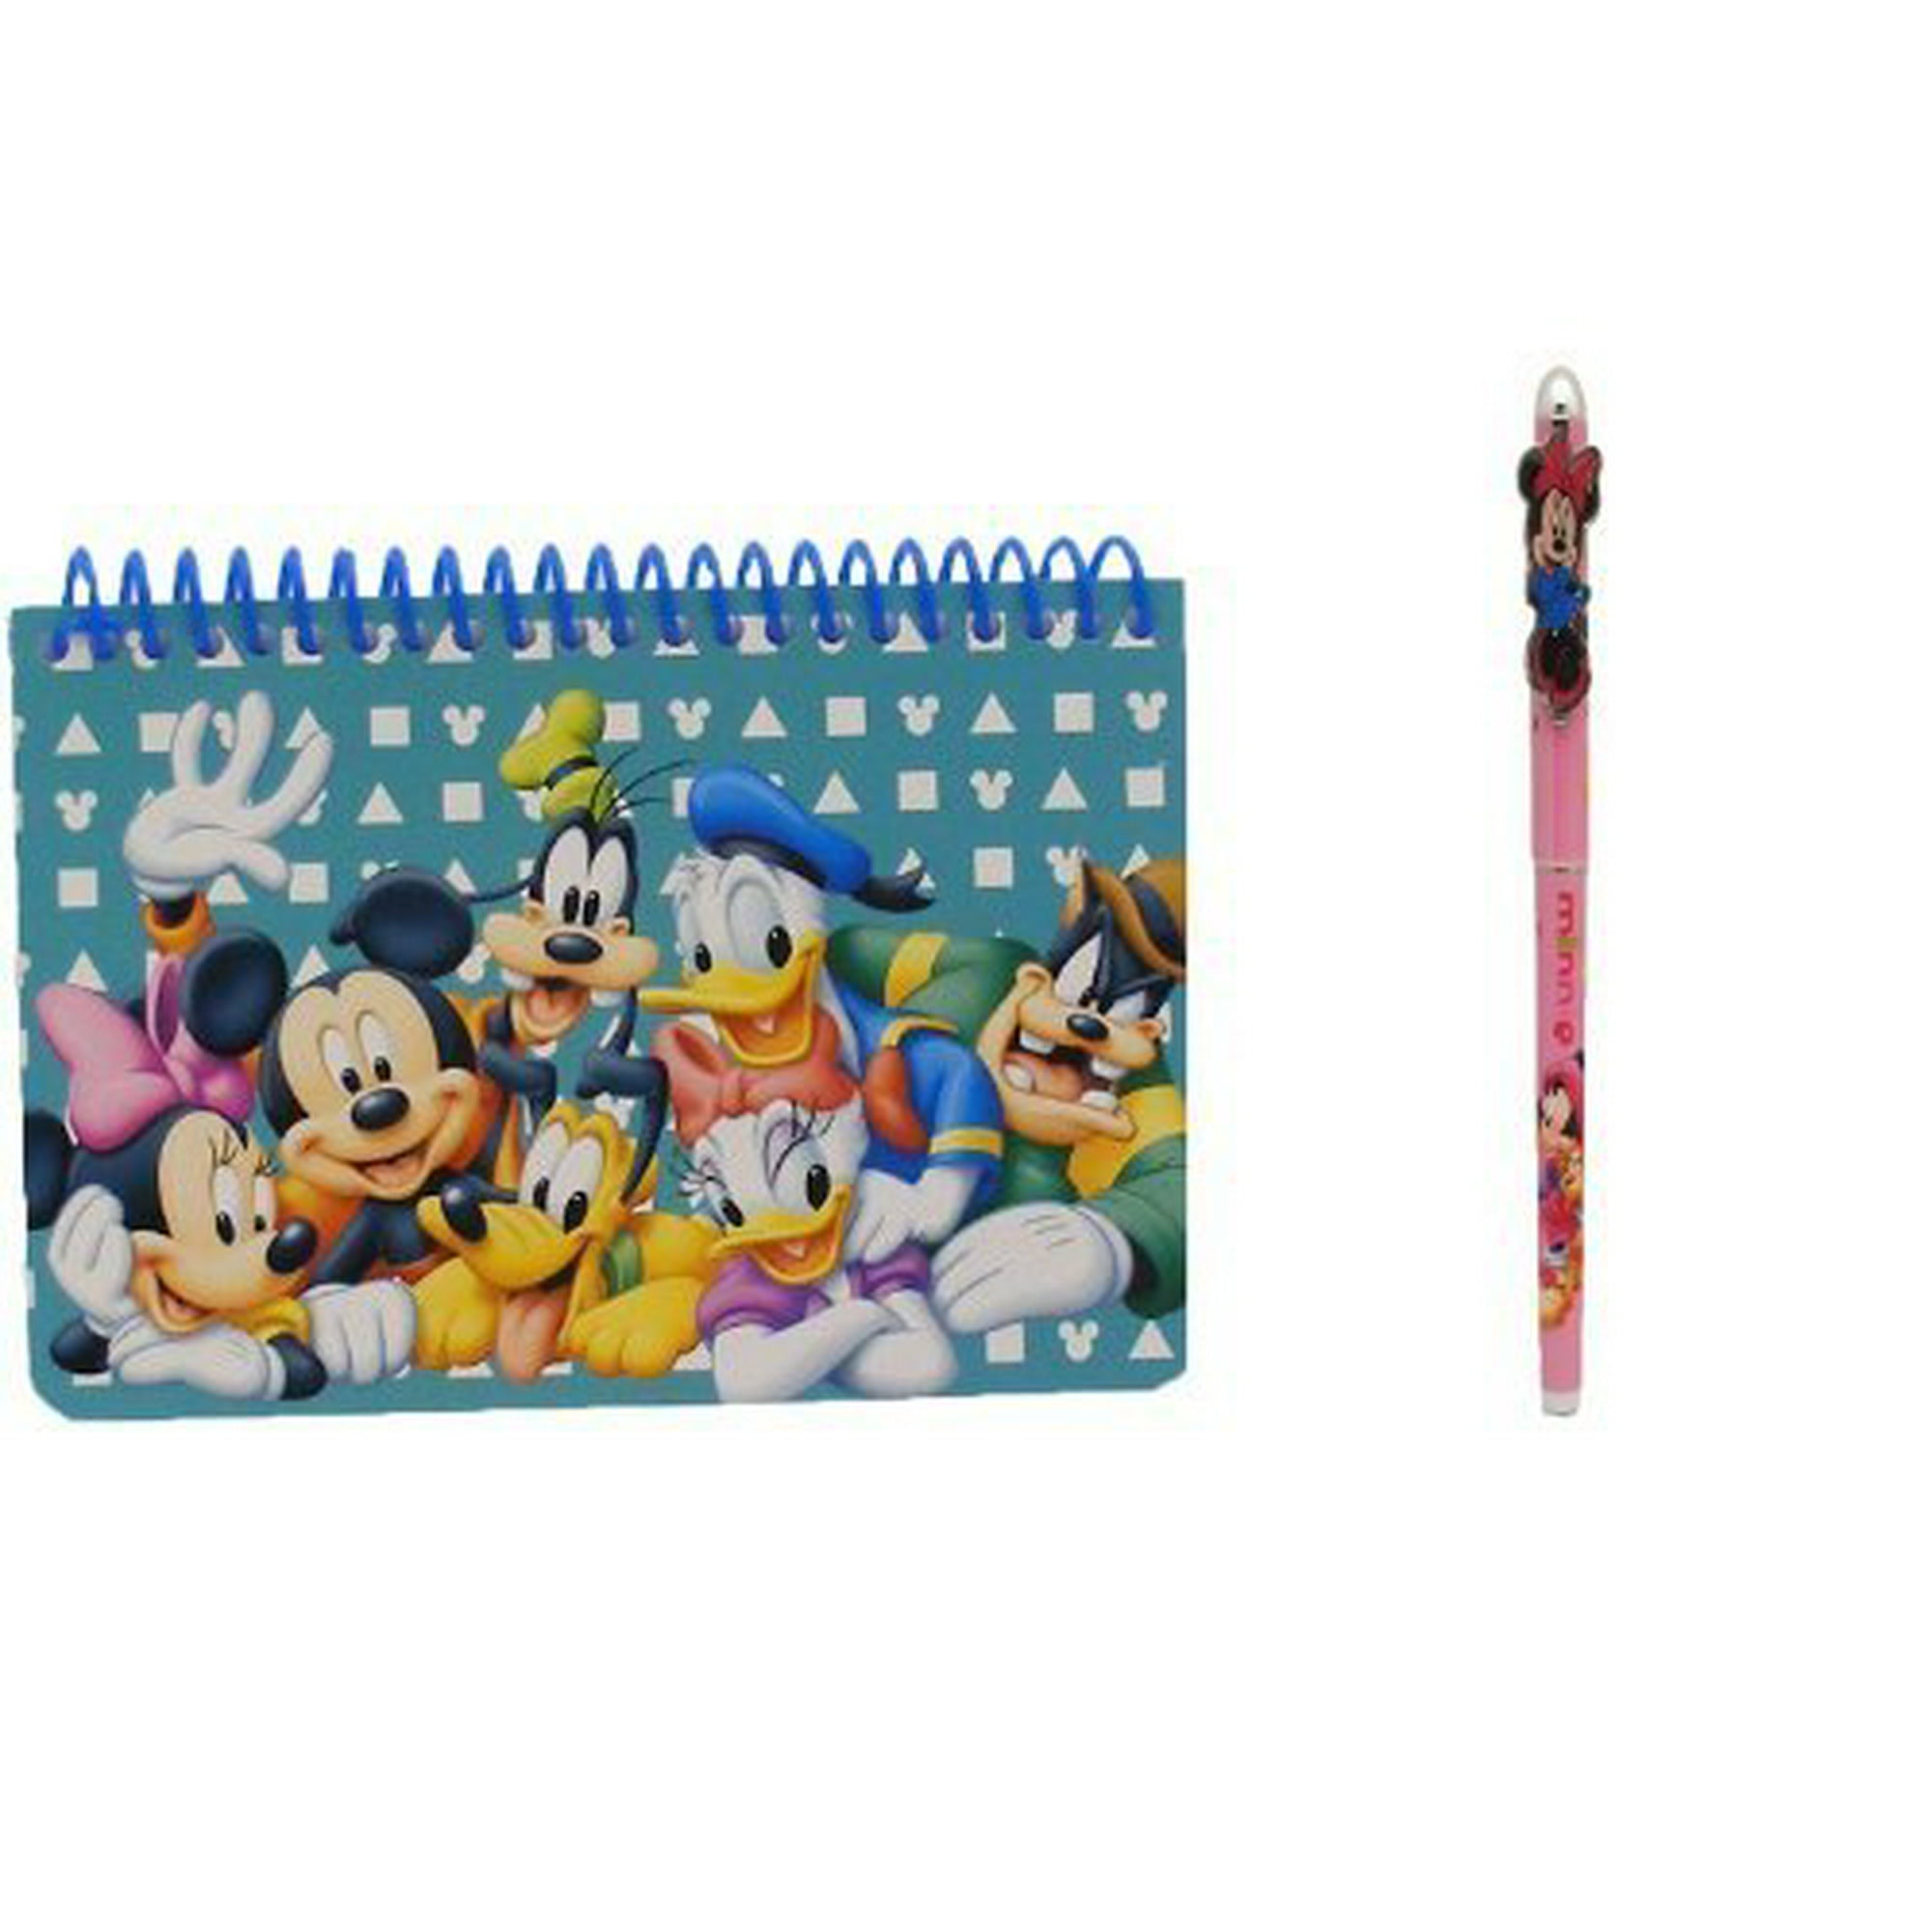  Disney Mickey Mouse - Libro de autógrafos con 1 bolígrafo  retráctil, color azul oscuro : Productos de Oficina